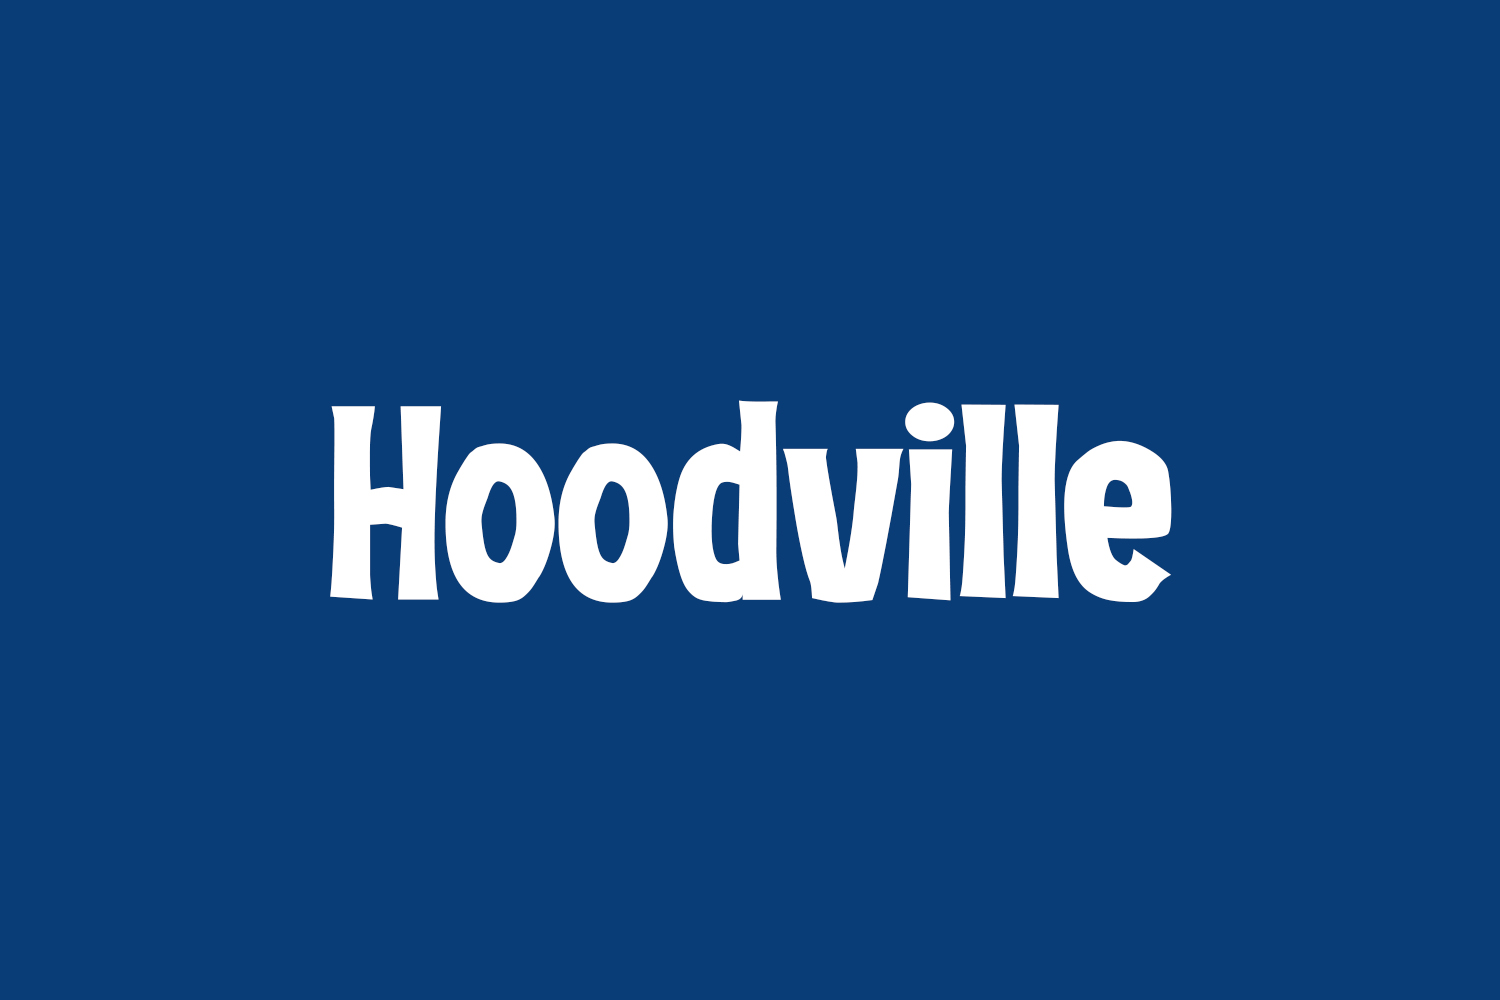 Hoodville Free Font